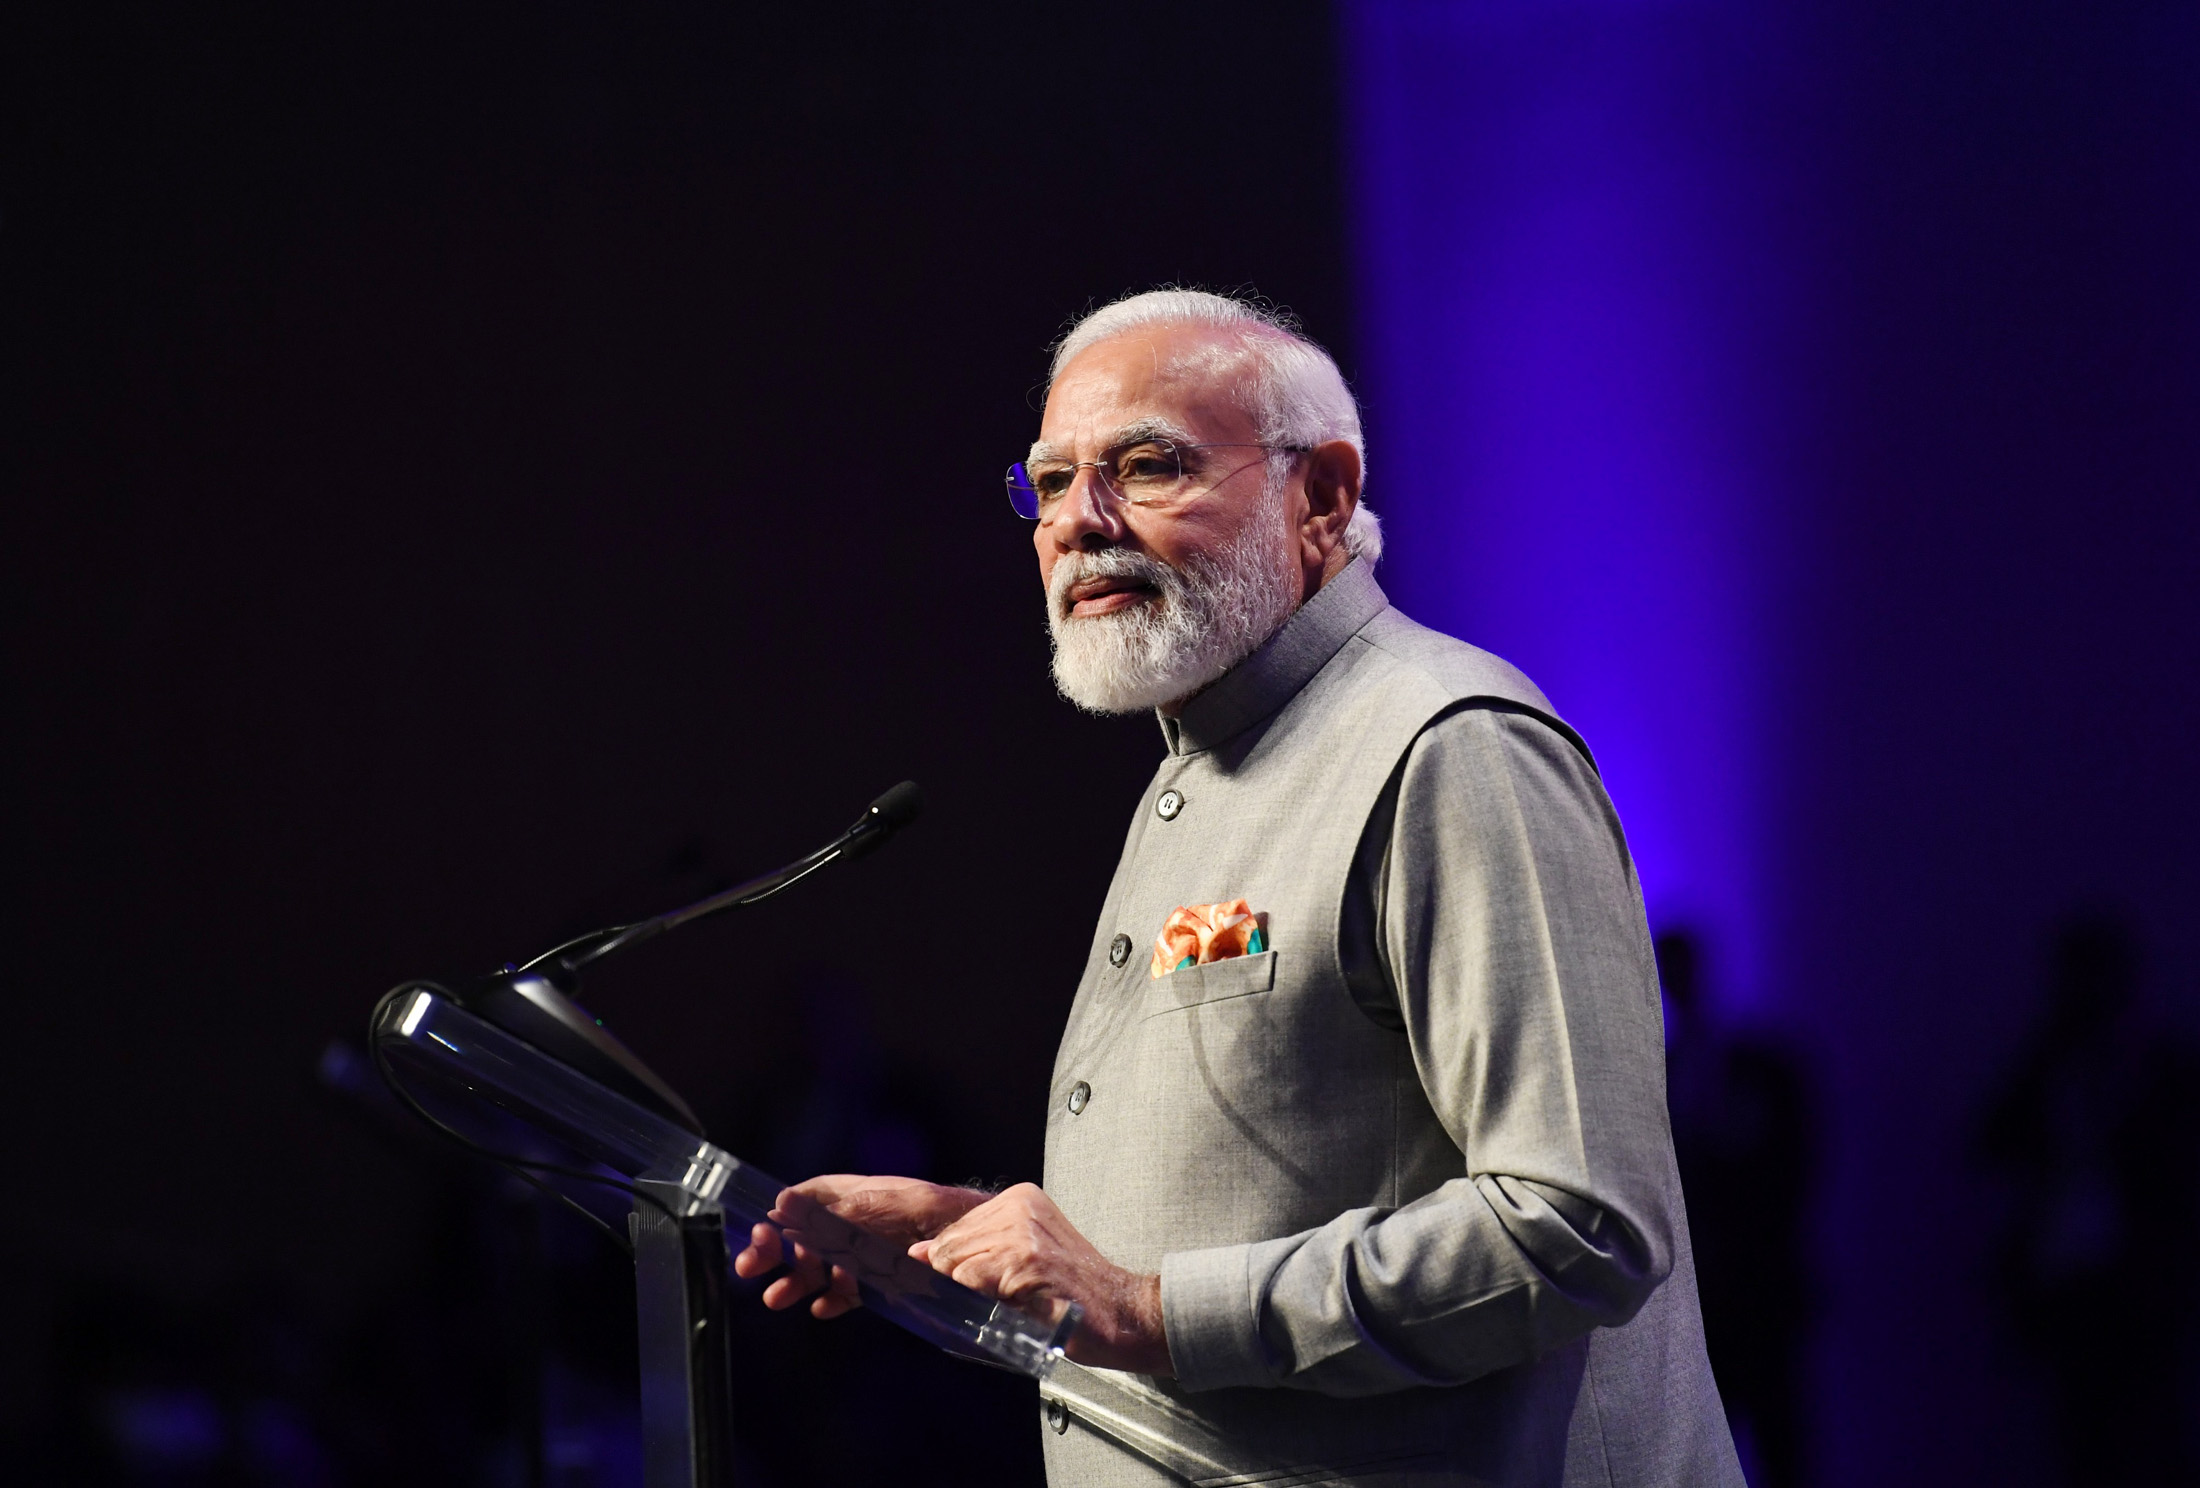 Live: PM Modi inaugurates India Energy Week 2023 in Bengaluru, Karnataka